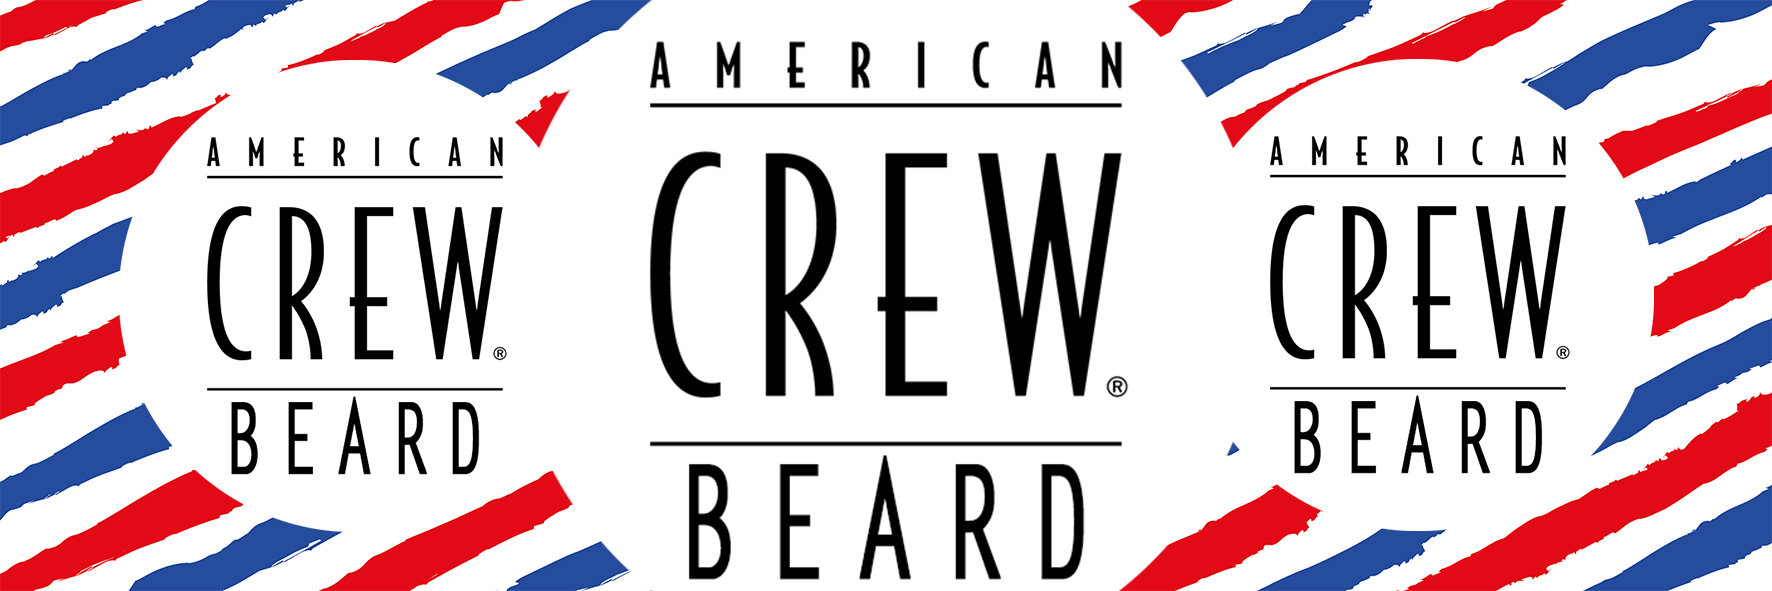 American-Crew-Beard